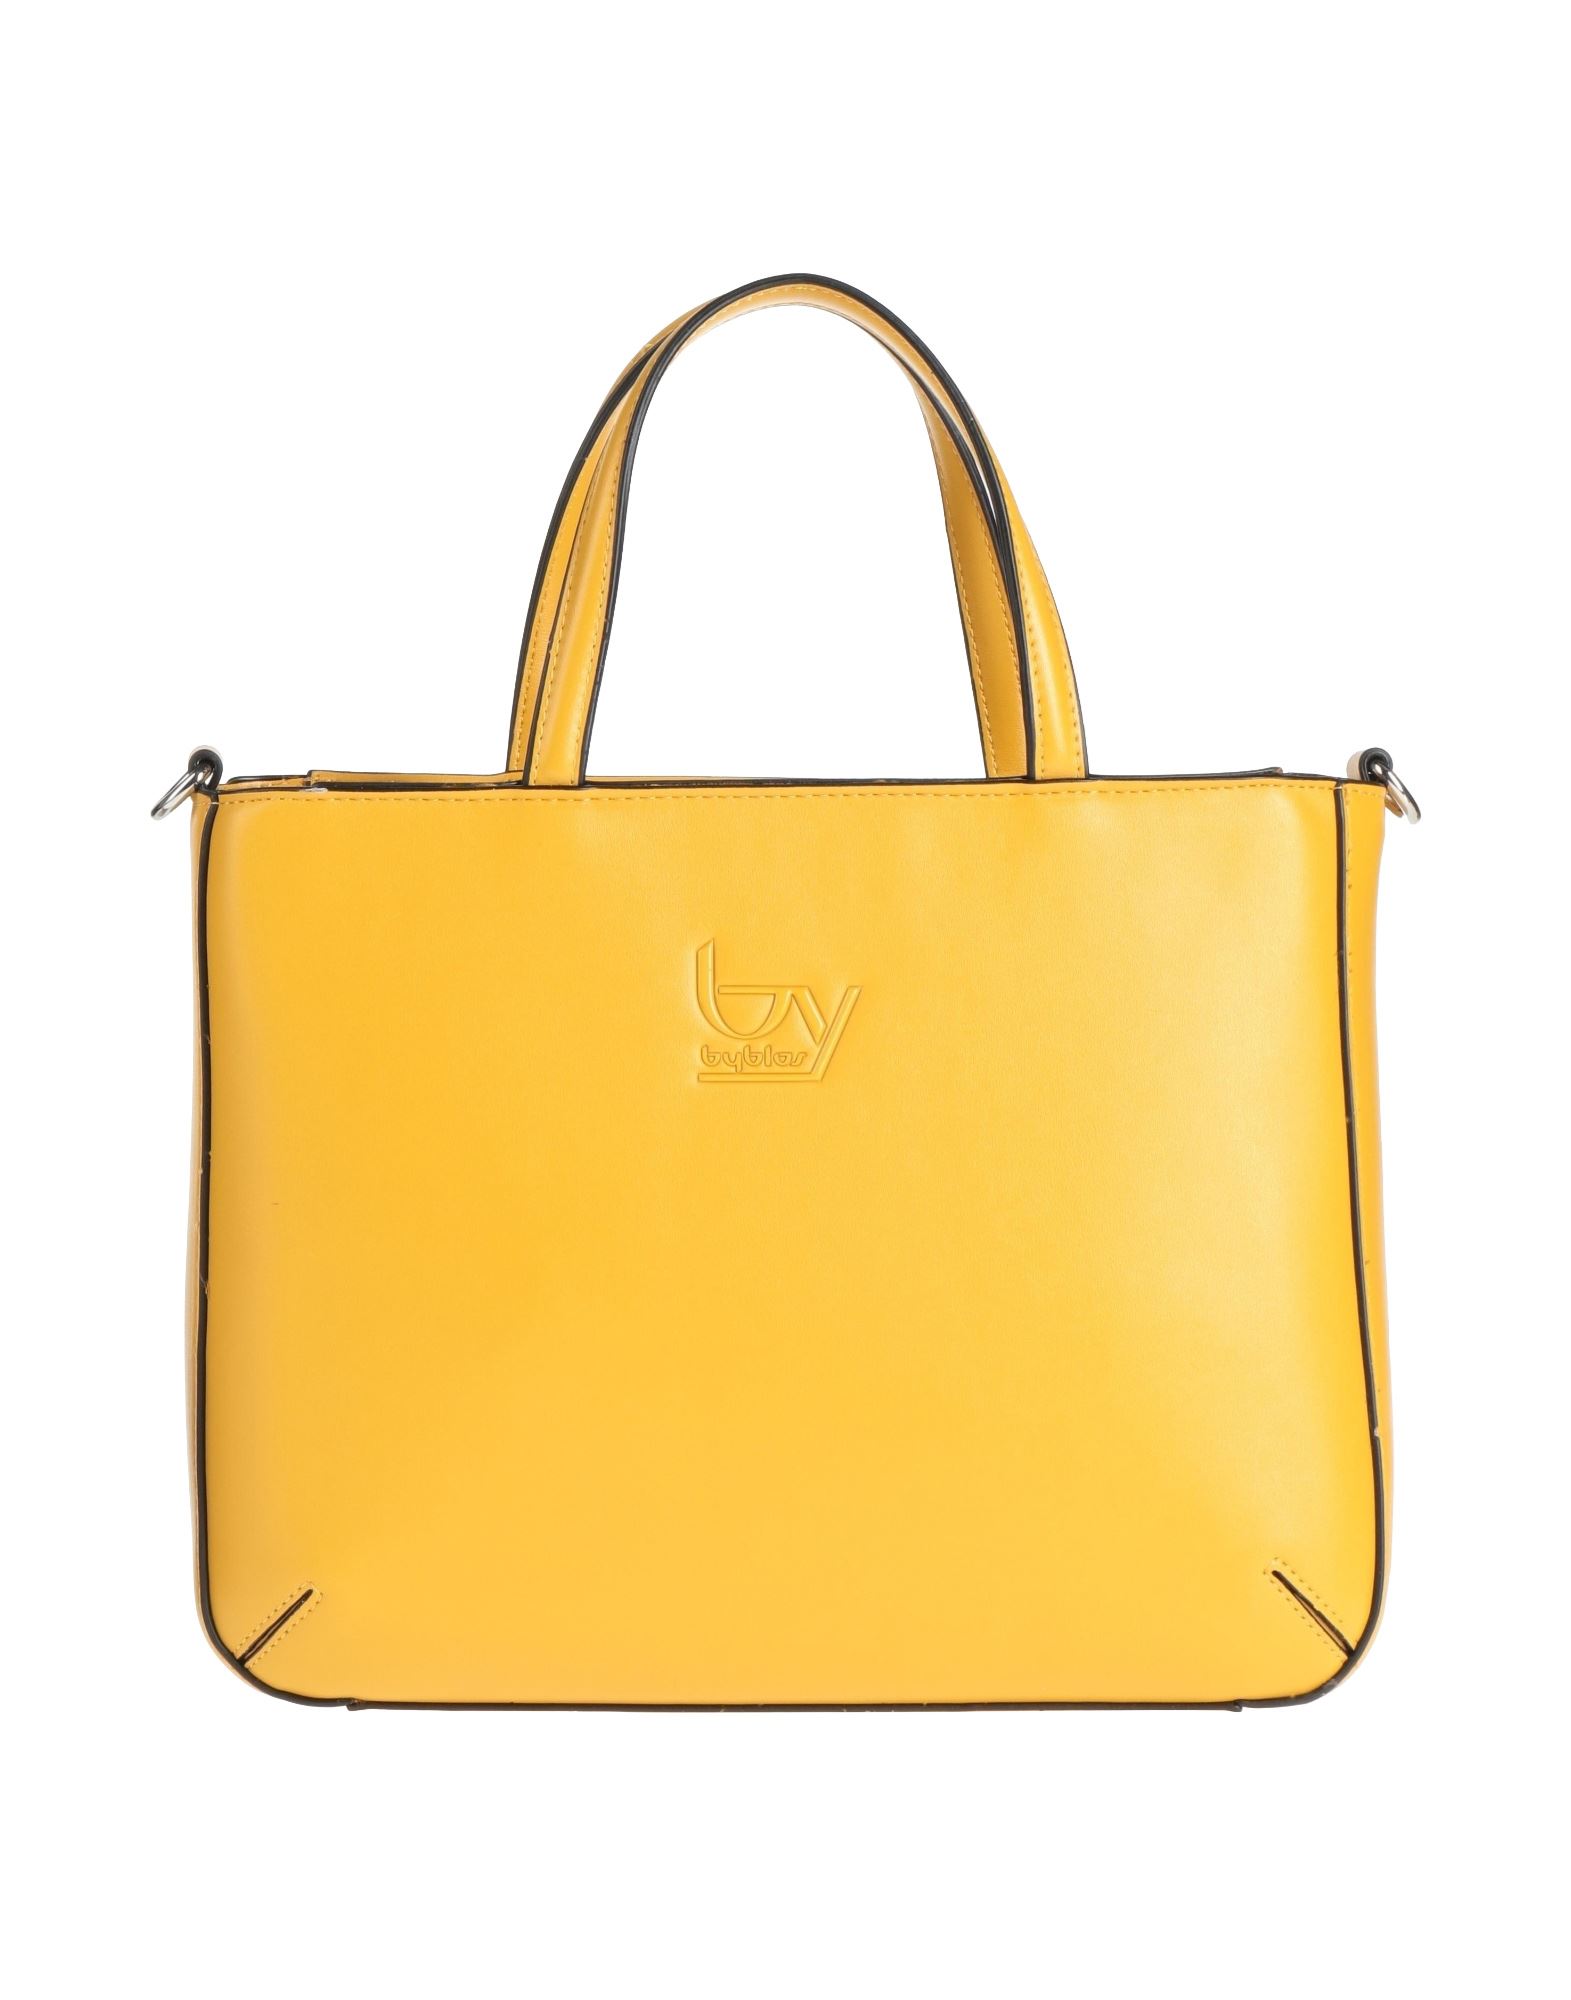 Byblos Handbags In Yellow